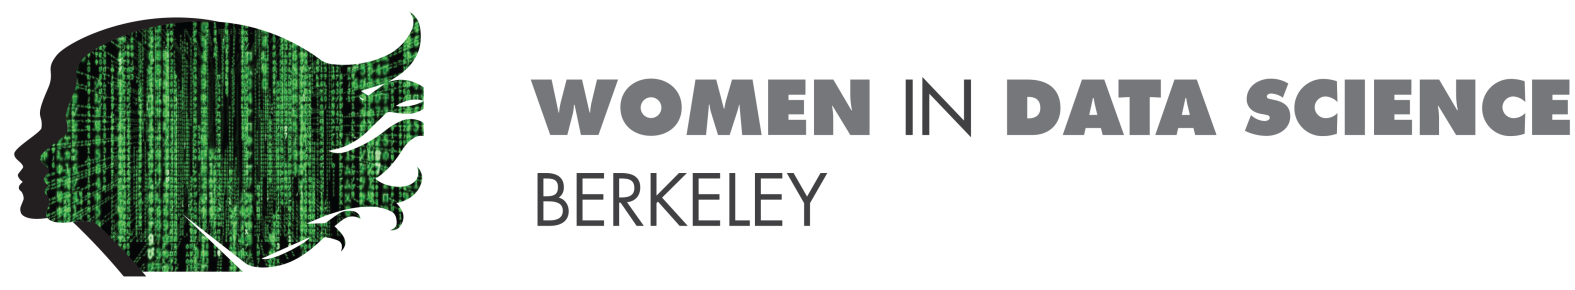 Women in Data Science, Berkeley